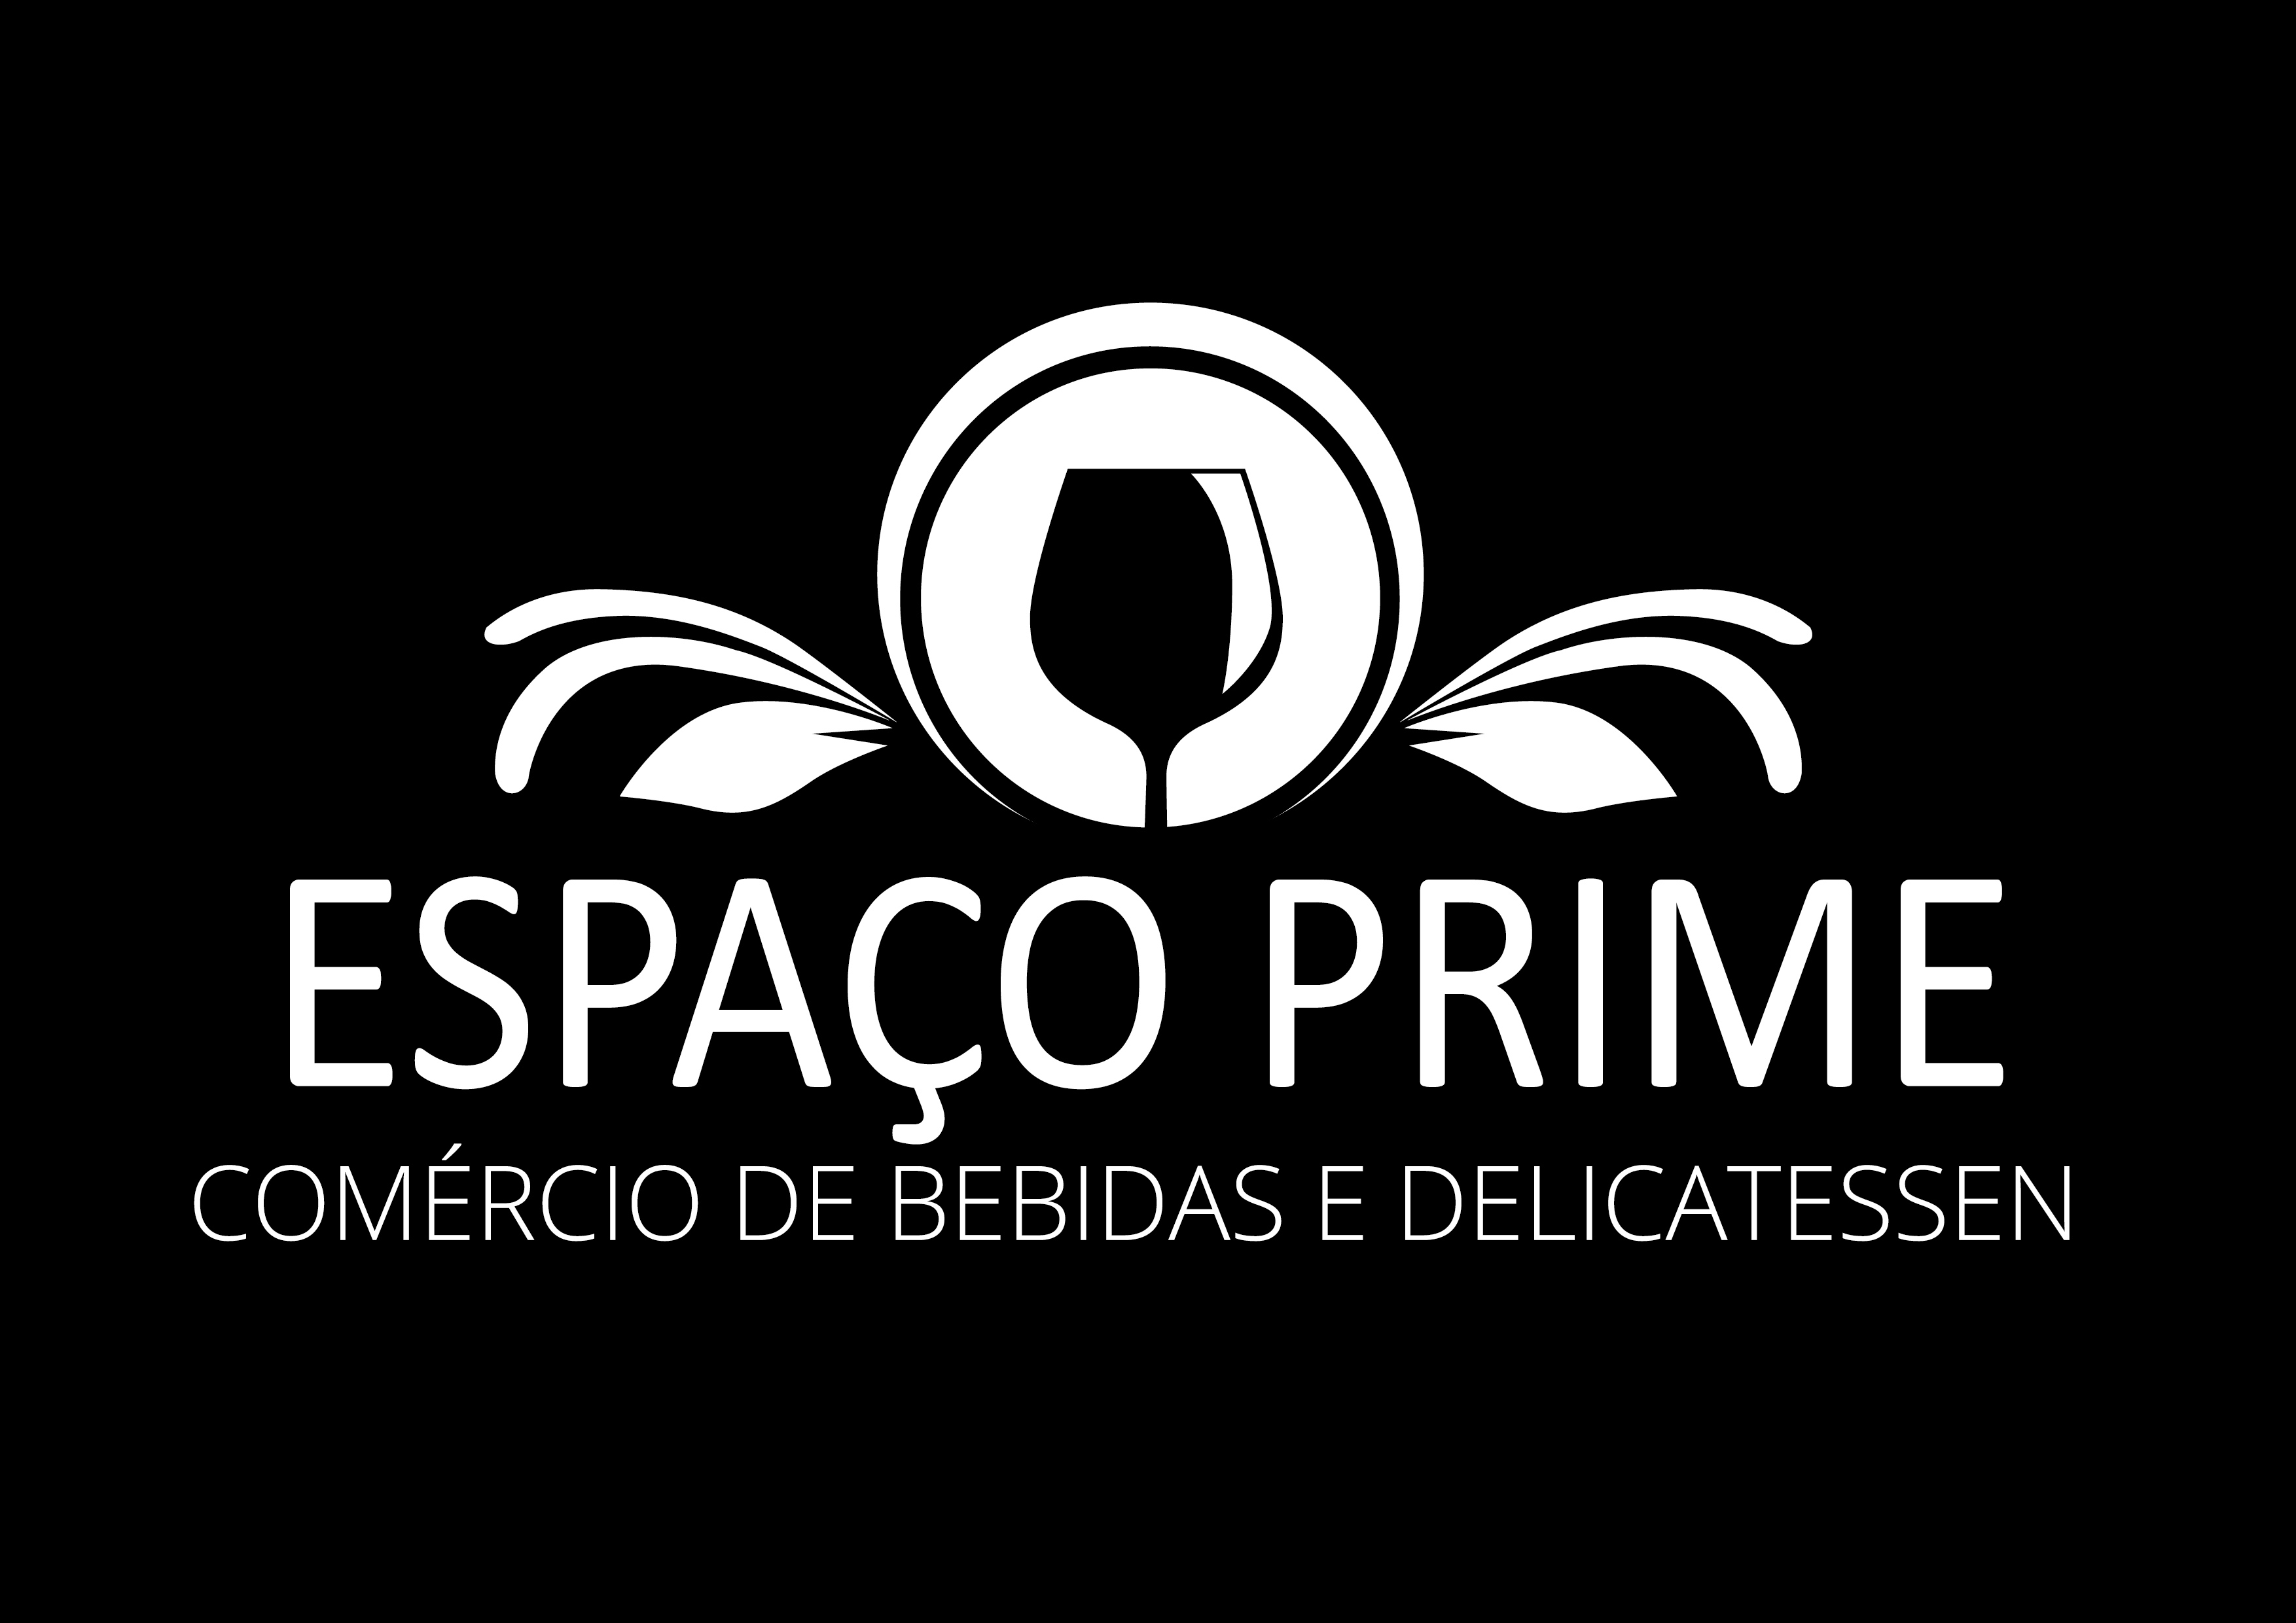 ESPACO PRIME COMÉRCIO DE BEBIDAS E DELICATESSEN